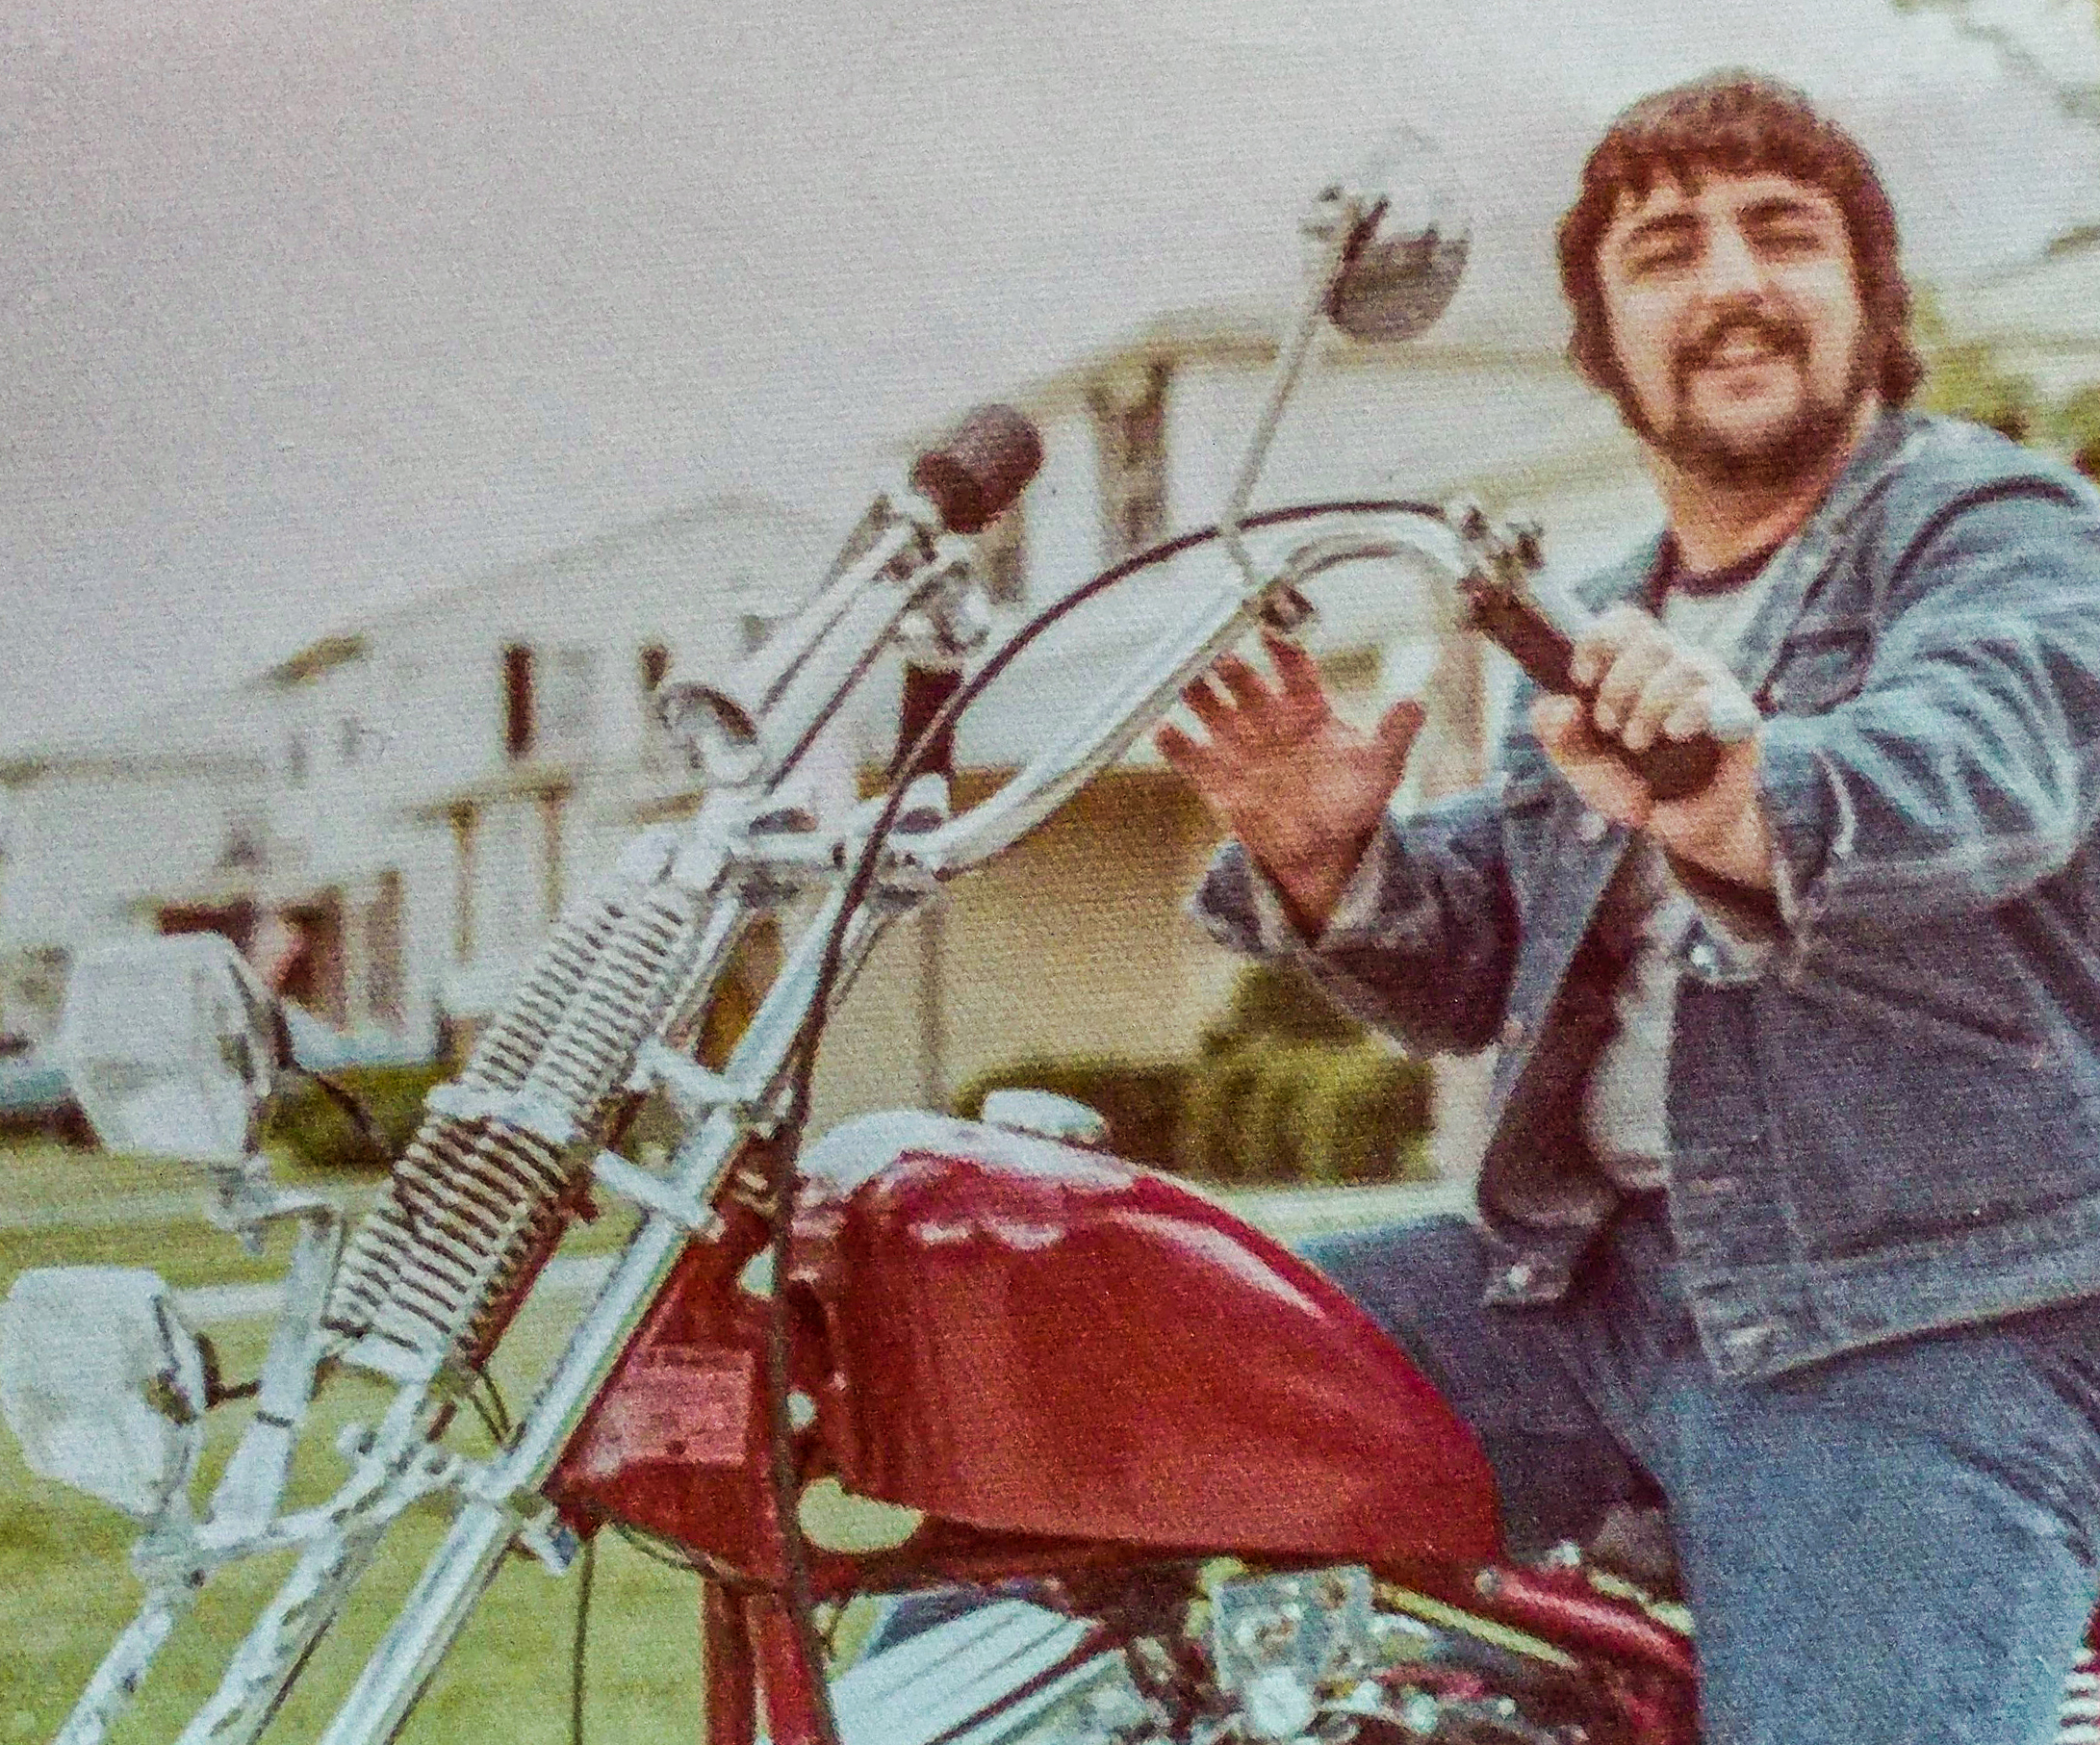 Joe Laraiso on a motorcycle